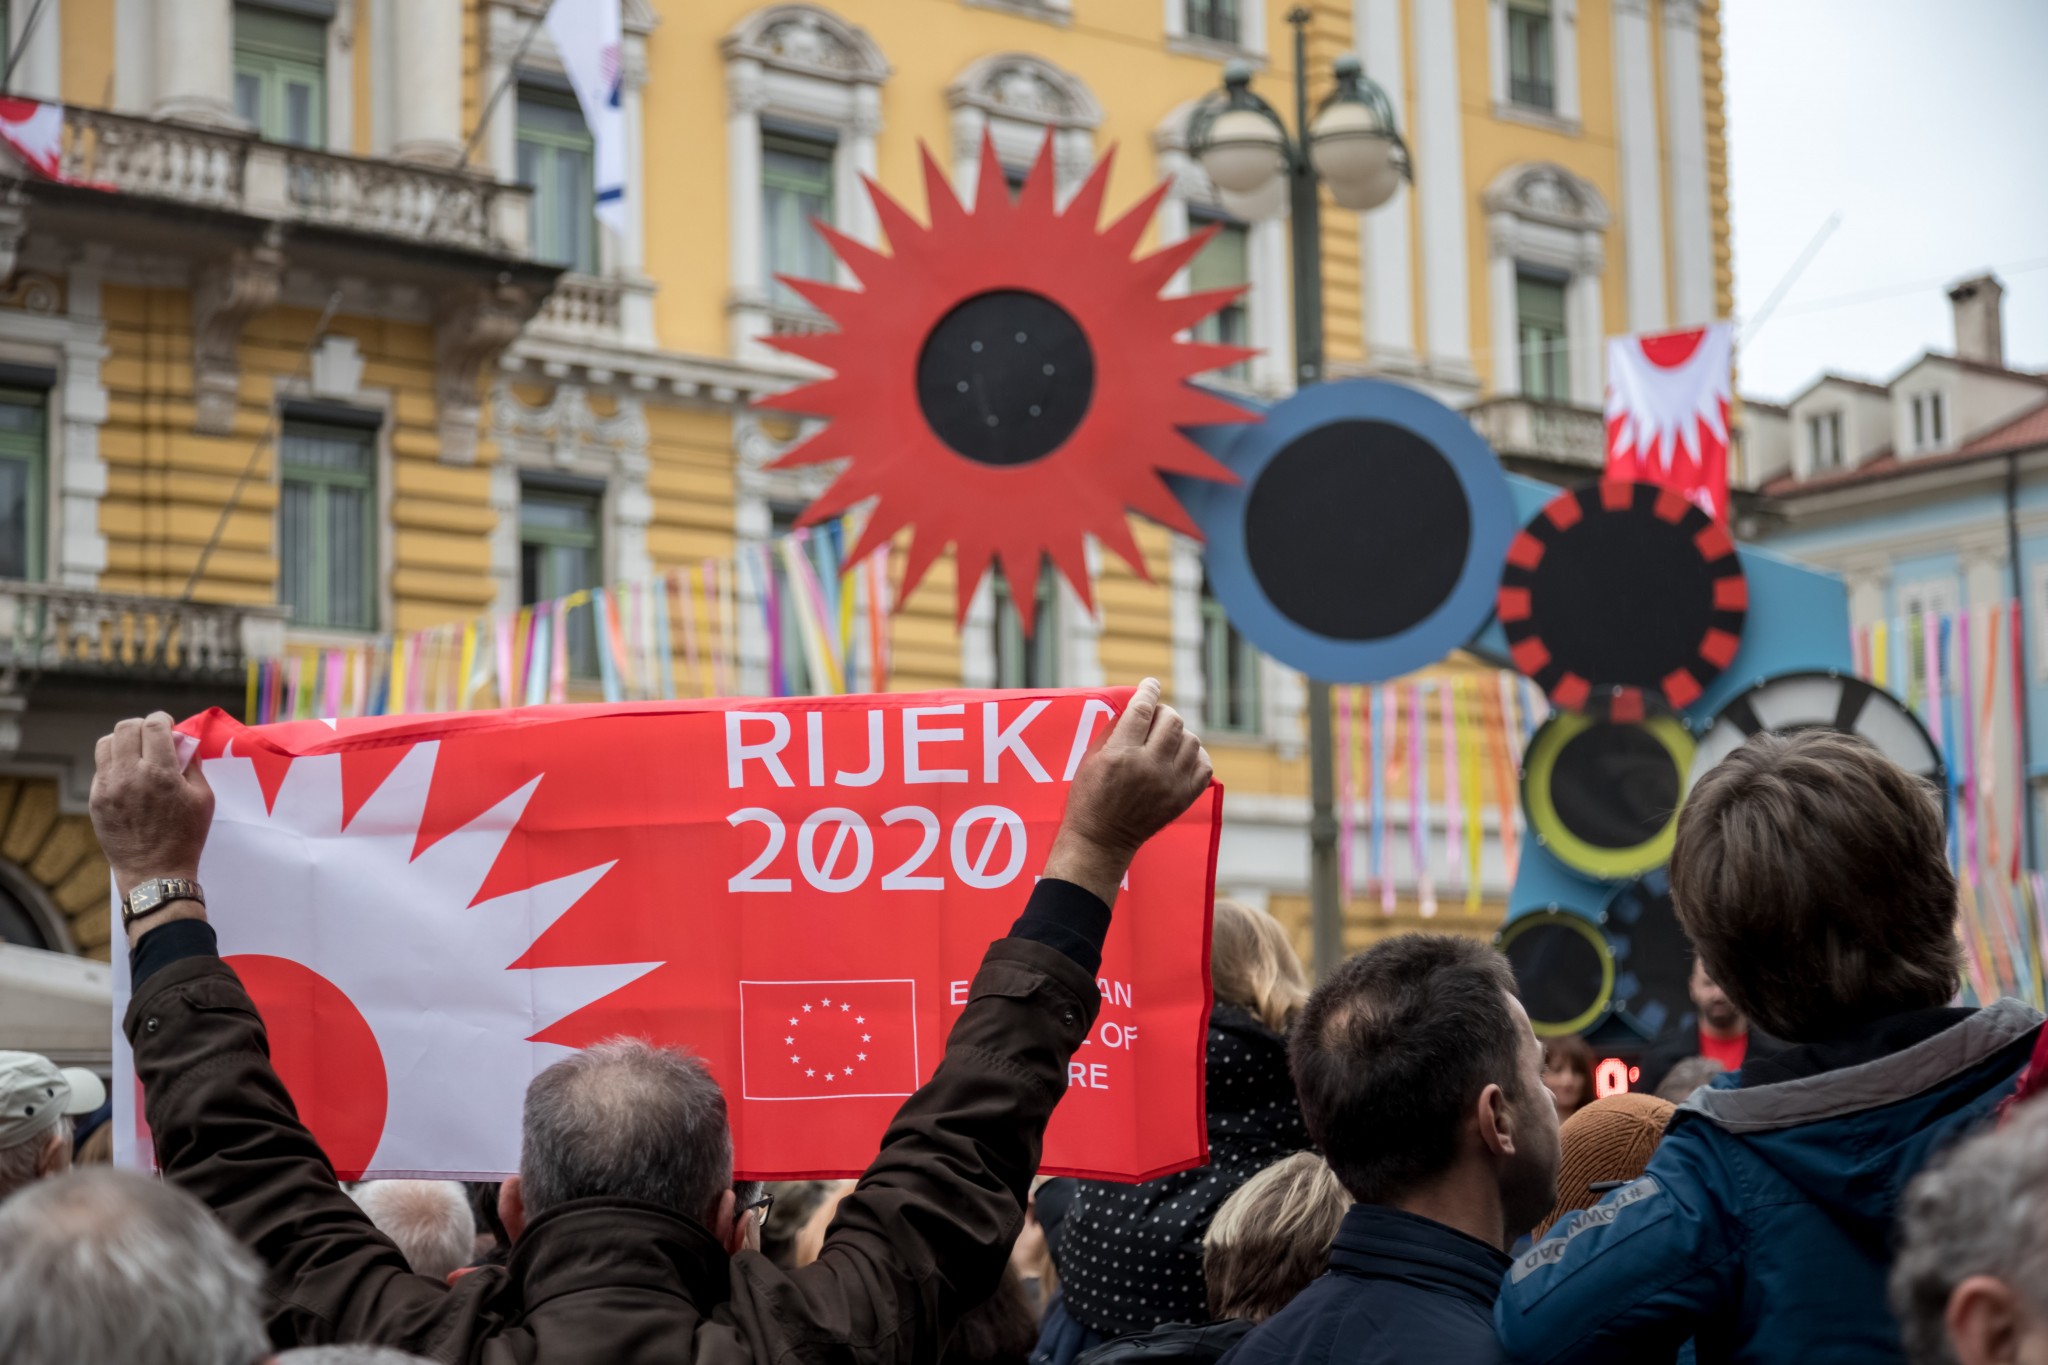 Rijeka 2020: the last few months